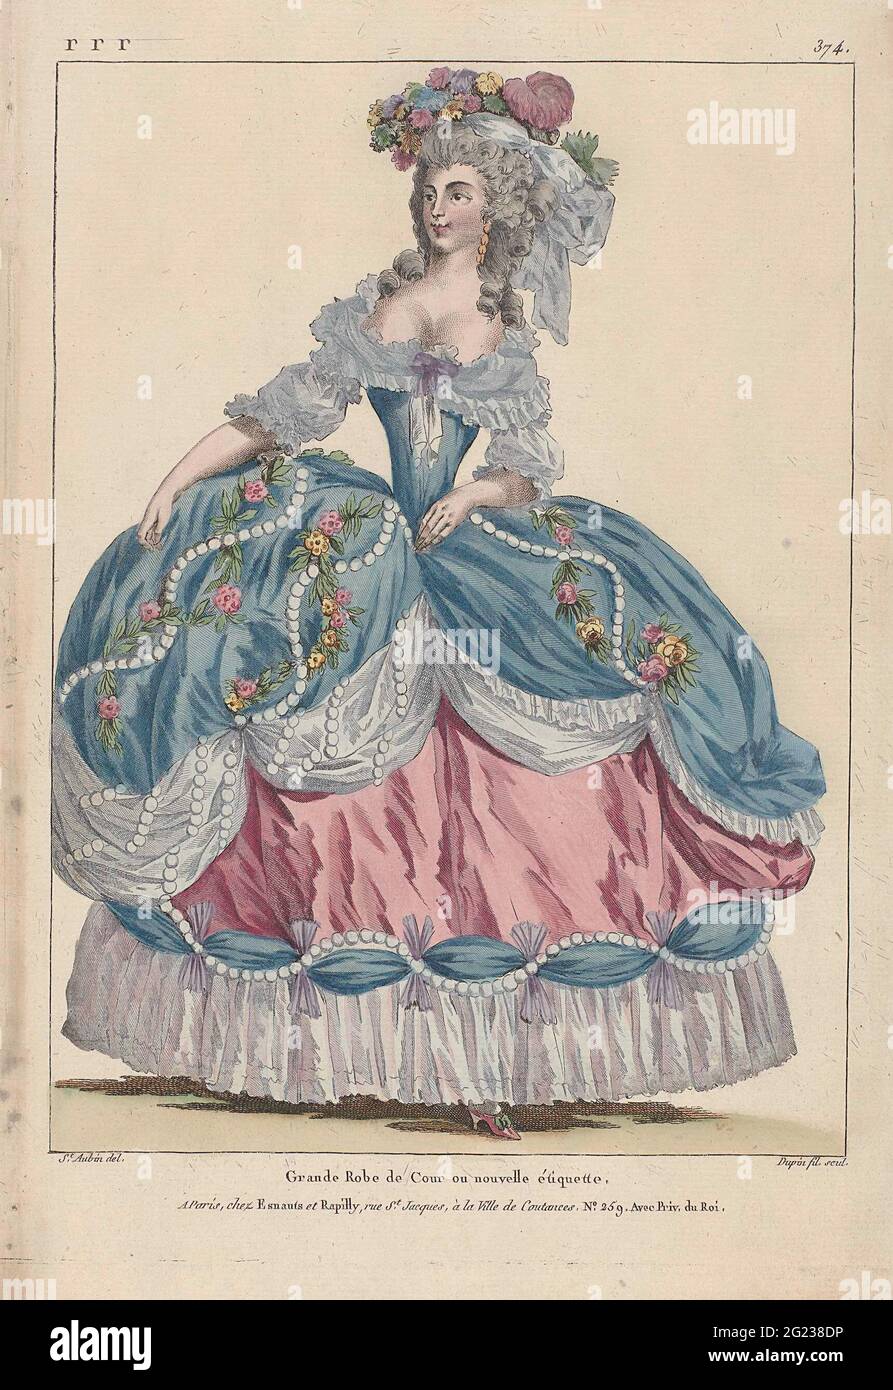 Maria Antonietta: La Regina della Moda: Gallerie des Modes et Costumes  Français. Le regine francesi si aspettavano di dare un esempio nel regno  della moda. Come moglie di Luigi XVI, Maria Antonietta